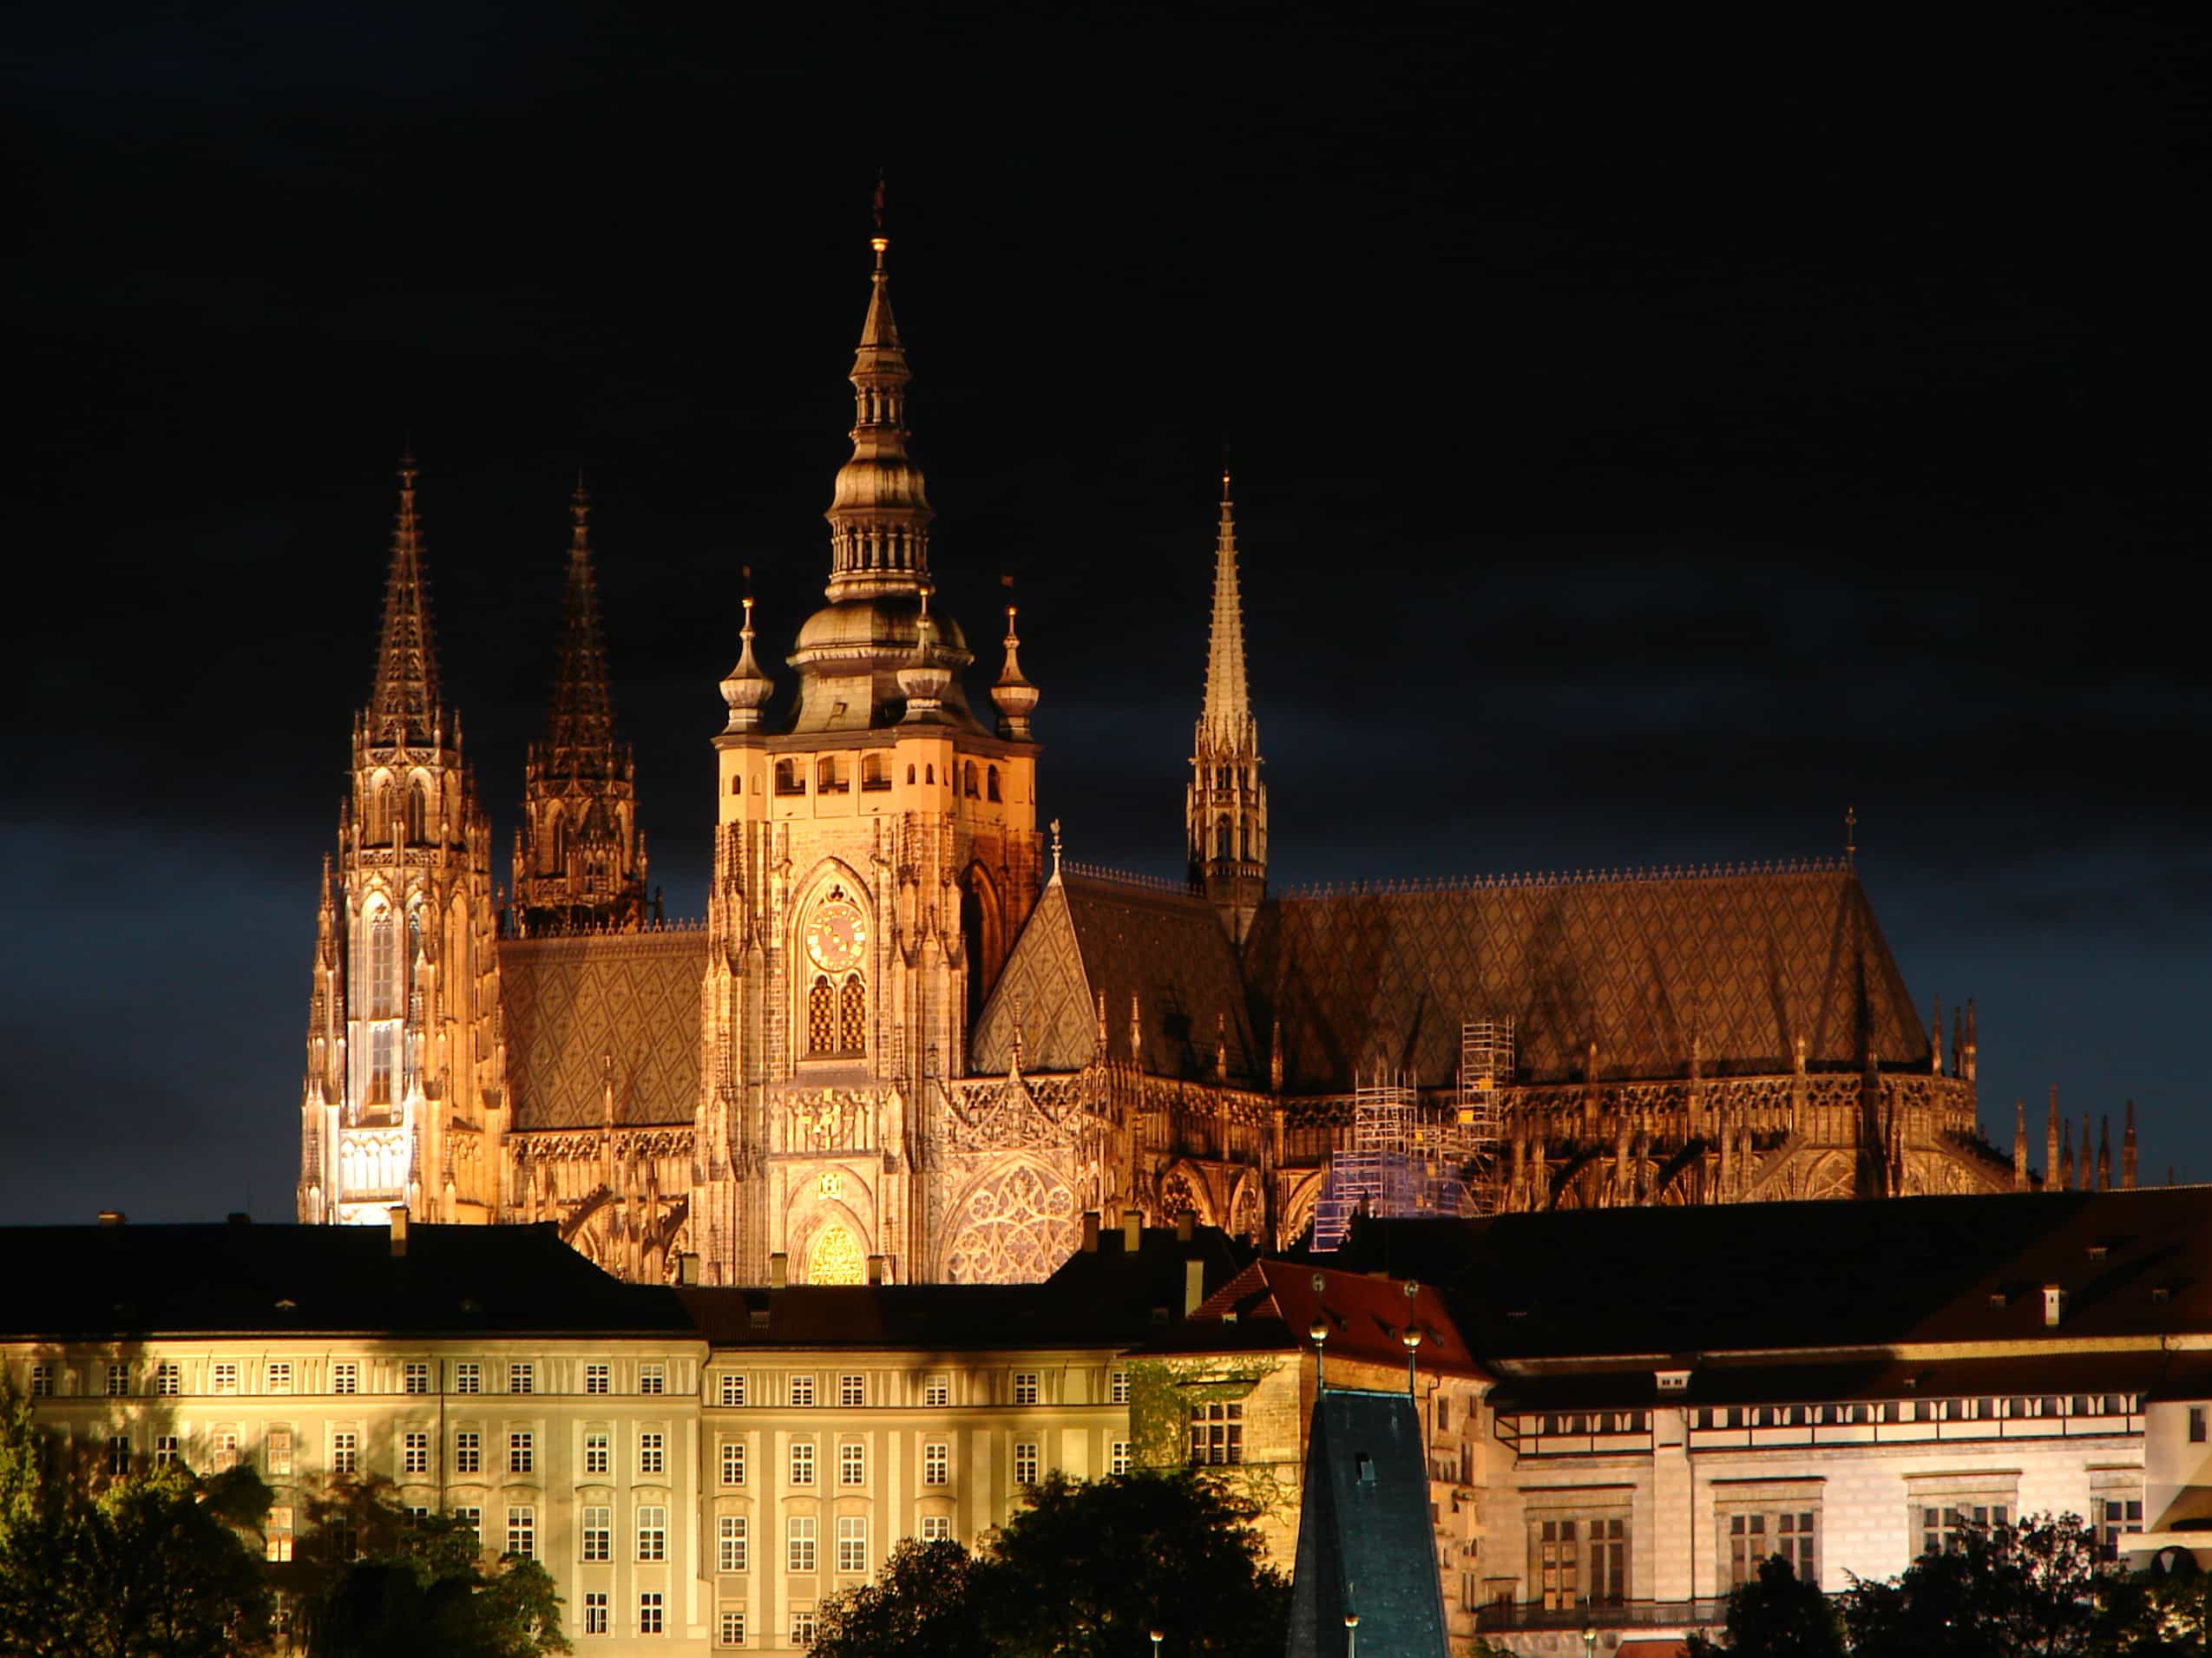 Praga, entre callejones e iglesias, como entrar en un cuento